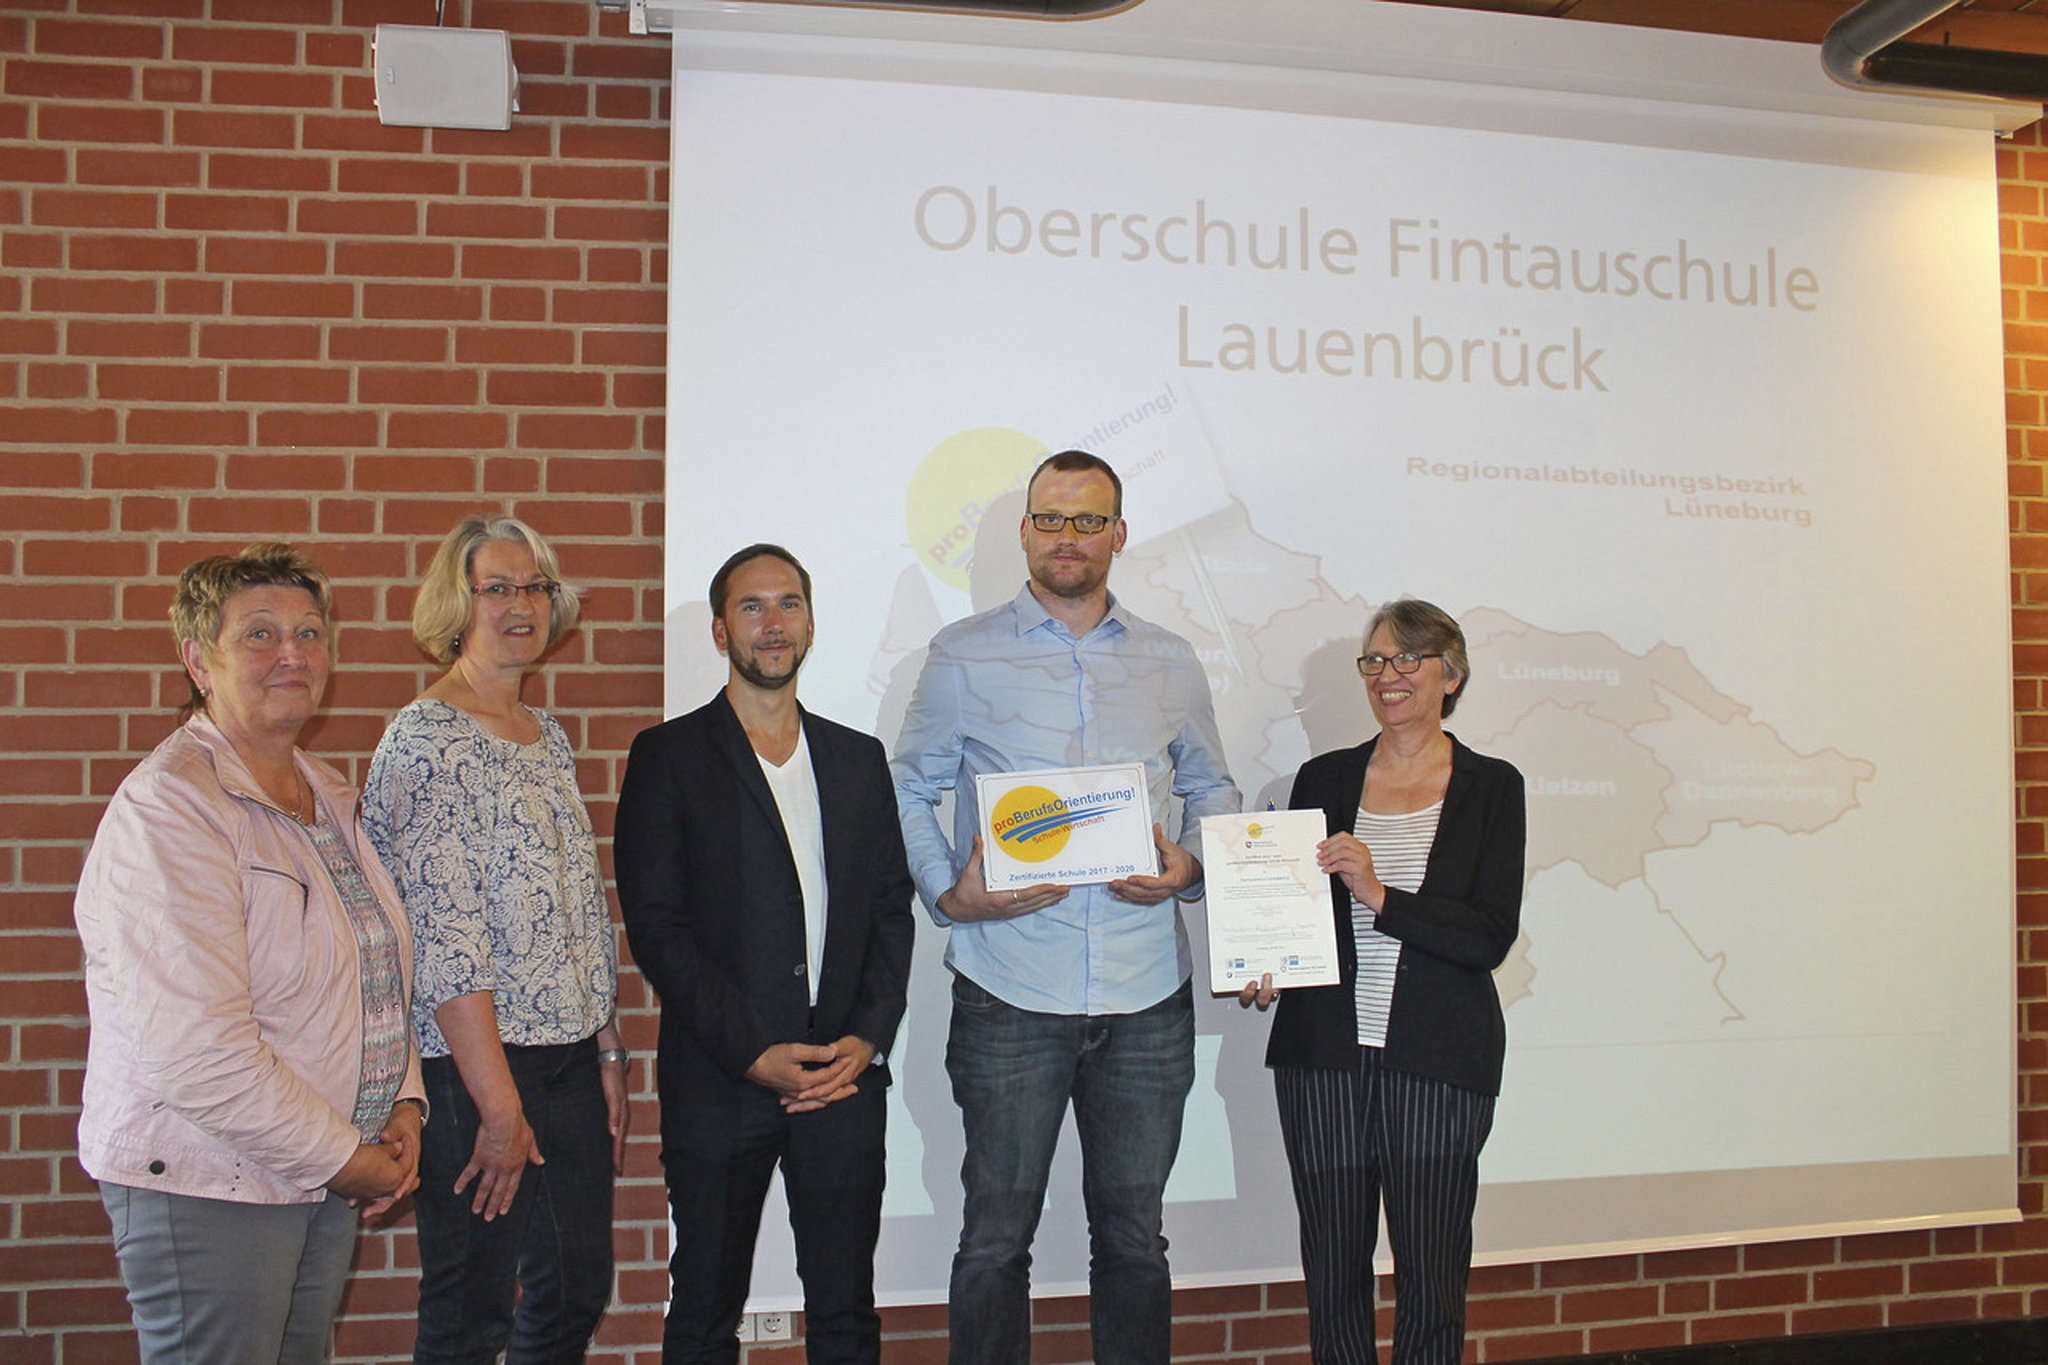 Monika Behrens, Heidrun von Wieding, Manfred Busch, Simon Hermsdorf und Elke Starostzik (von links) freuten sich sehr über die Auszeichnung, die der Fintauschule überreicht wurde.